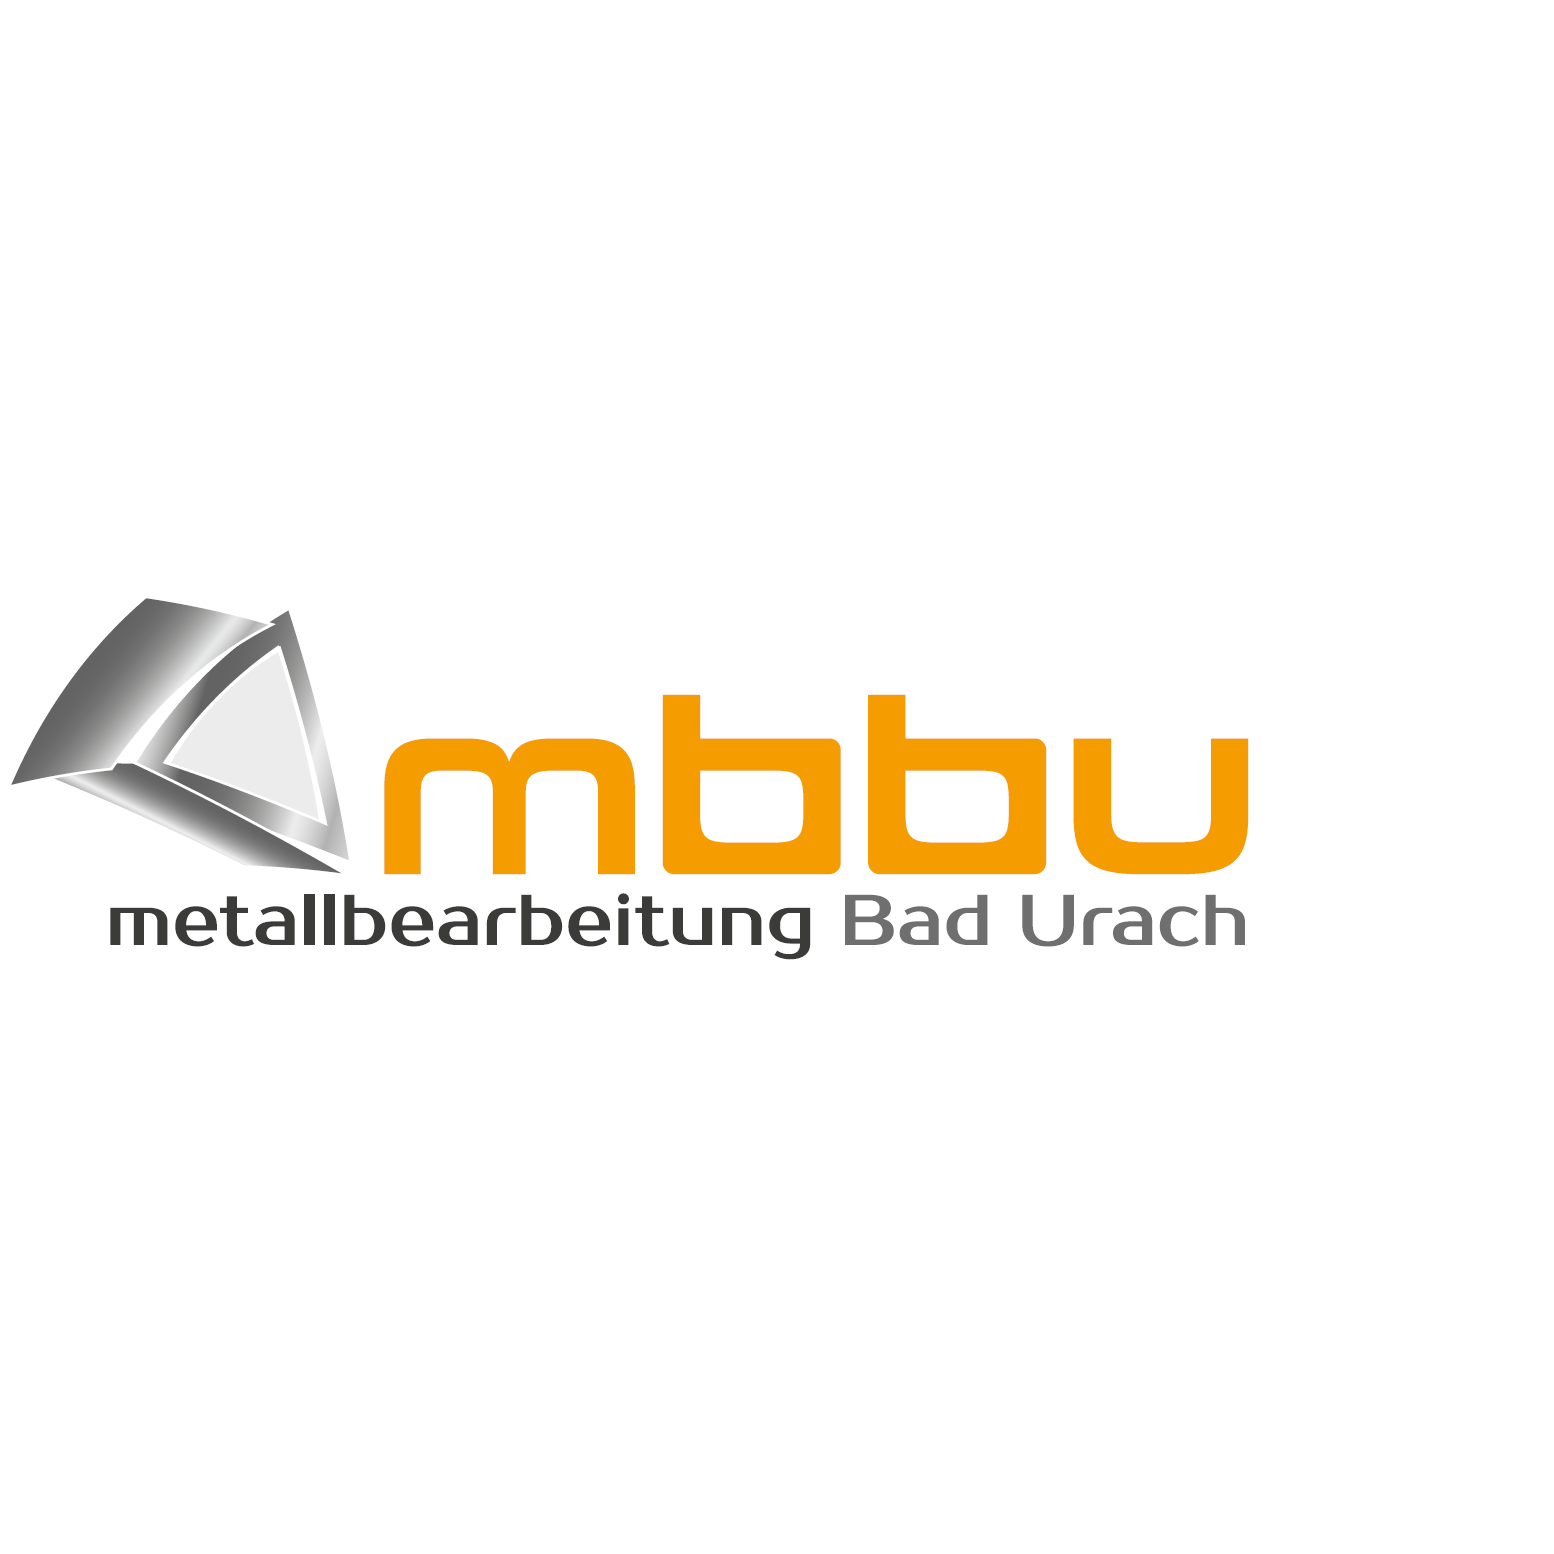 Logo von MBBU Metallbearbeitung Bad Urach GmbH